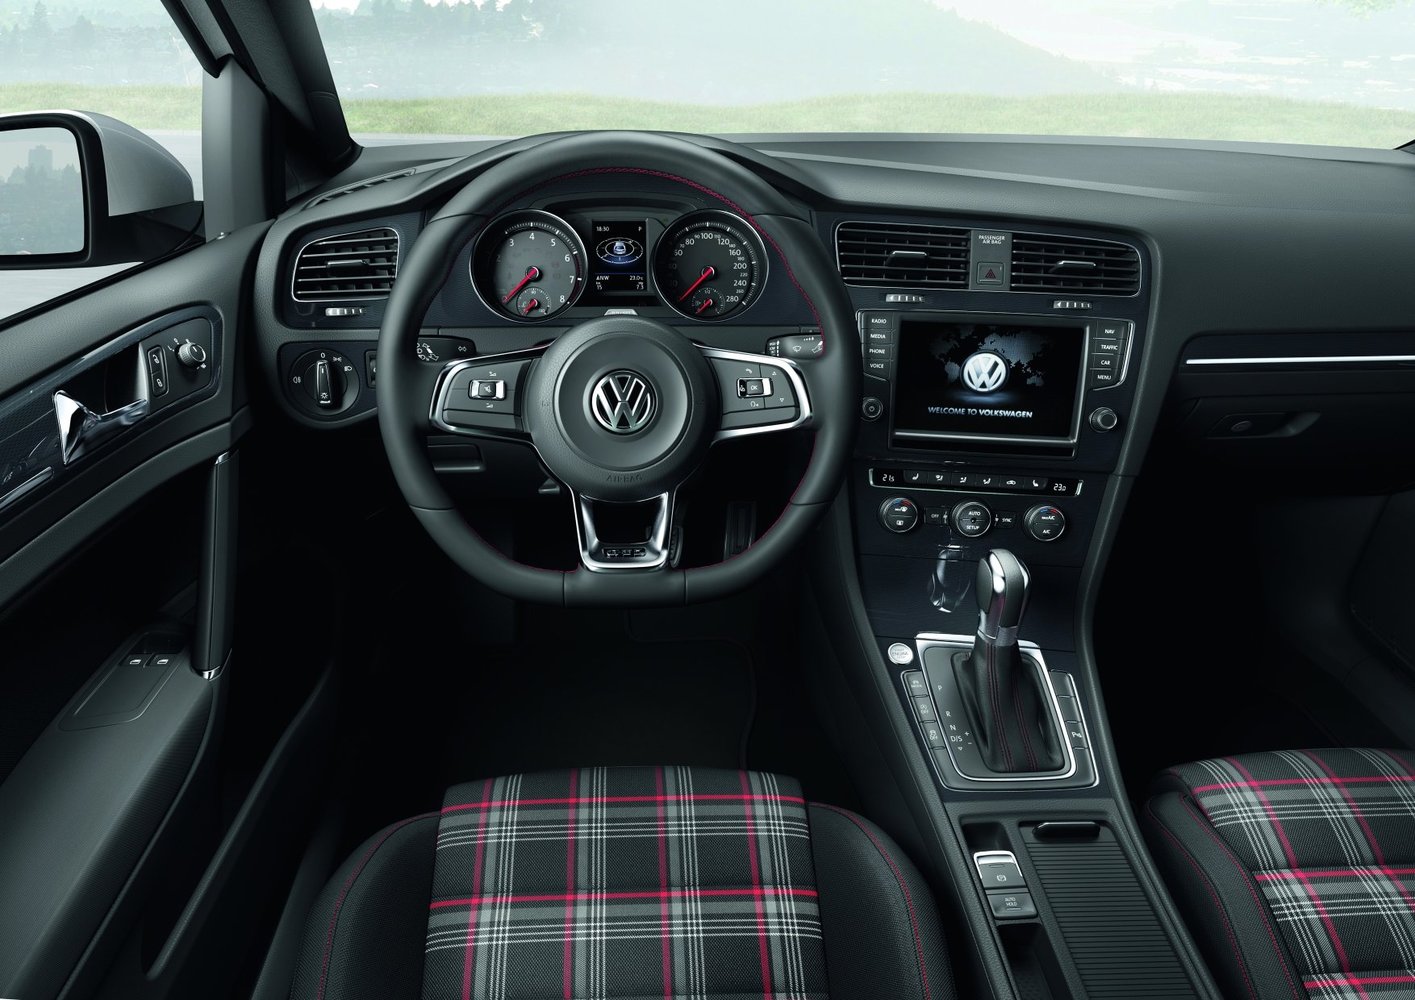 хэтчбек 3 дв. Volkswagen Golf GTI 2013 - 2016г выпуска модификация 2.0 AMT (230 л.с.)